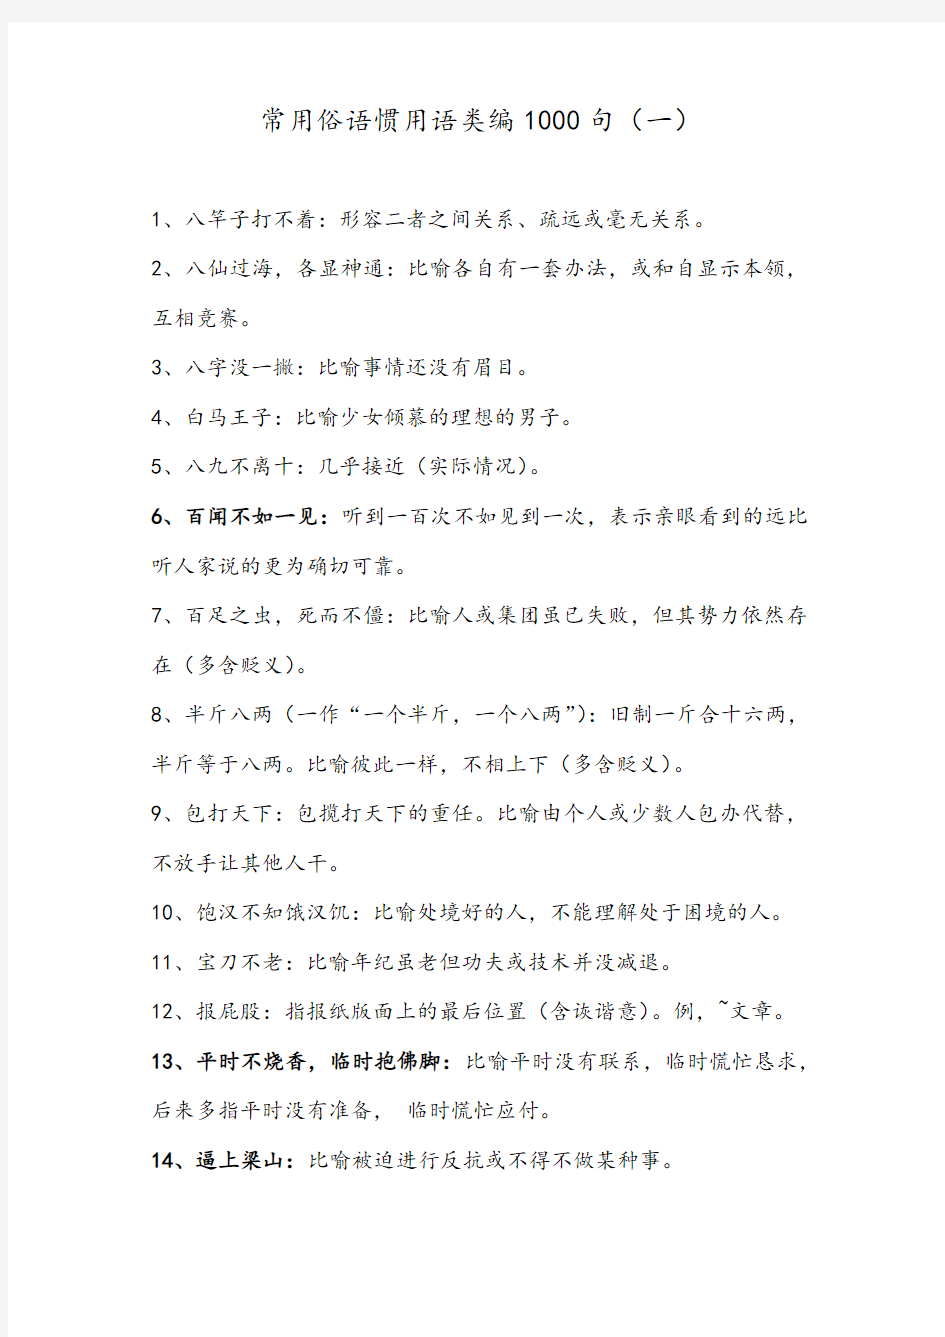 汉语常用俗语惯用语类编1000句